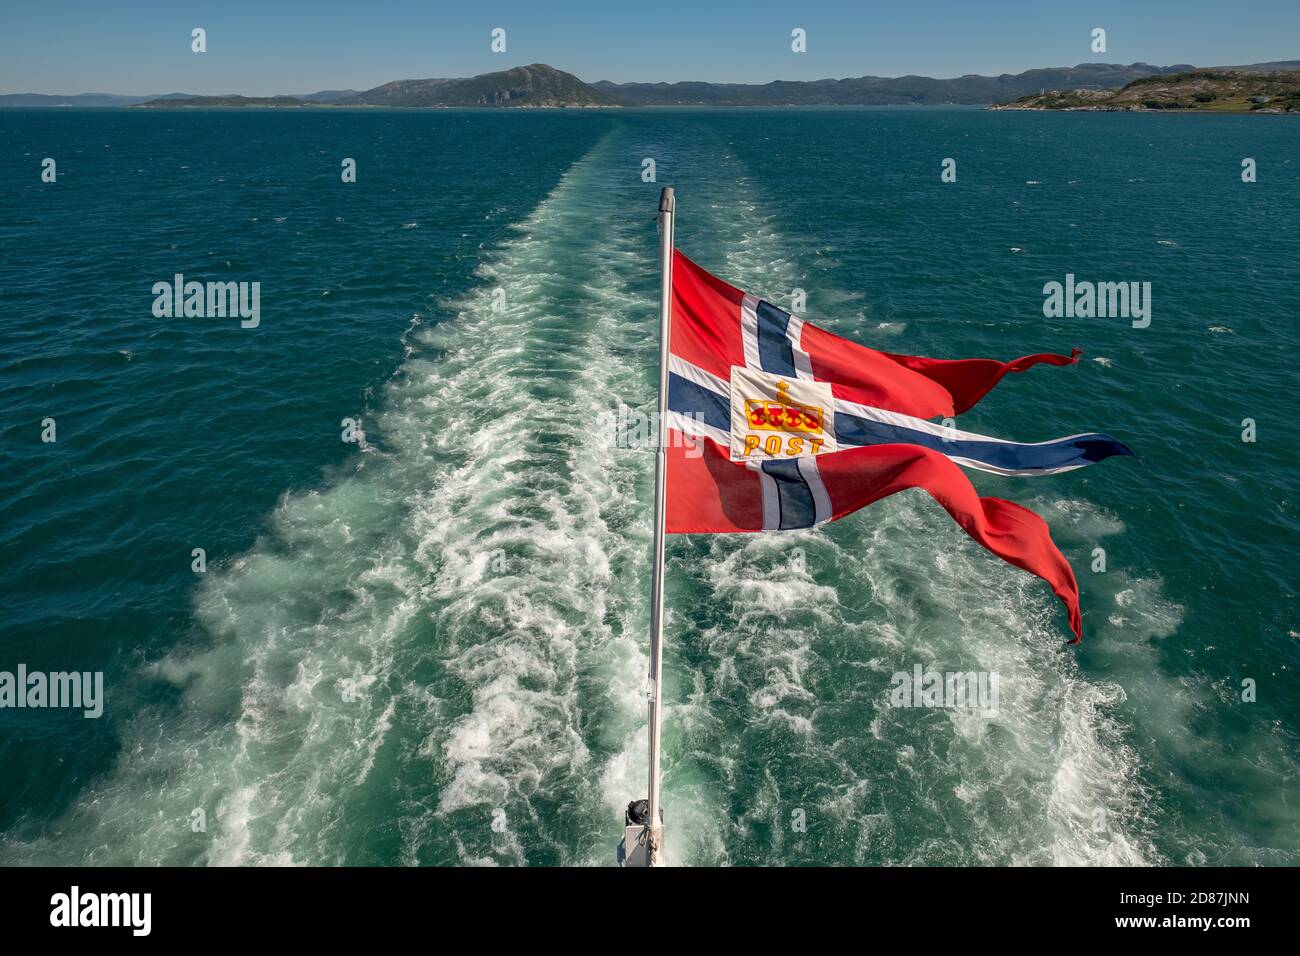 Le symbole de poste sur le drapeau norvégien d'un navire Hurtigruten, spray moussant, Trondheimfjord, Agdenes, Trøndelag, Norvège, Scandinavie, Europe, tri aventure Banque D'Images